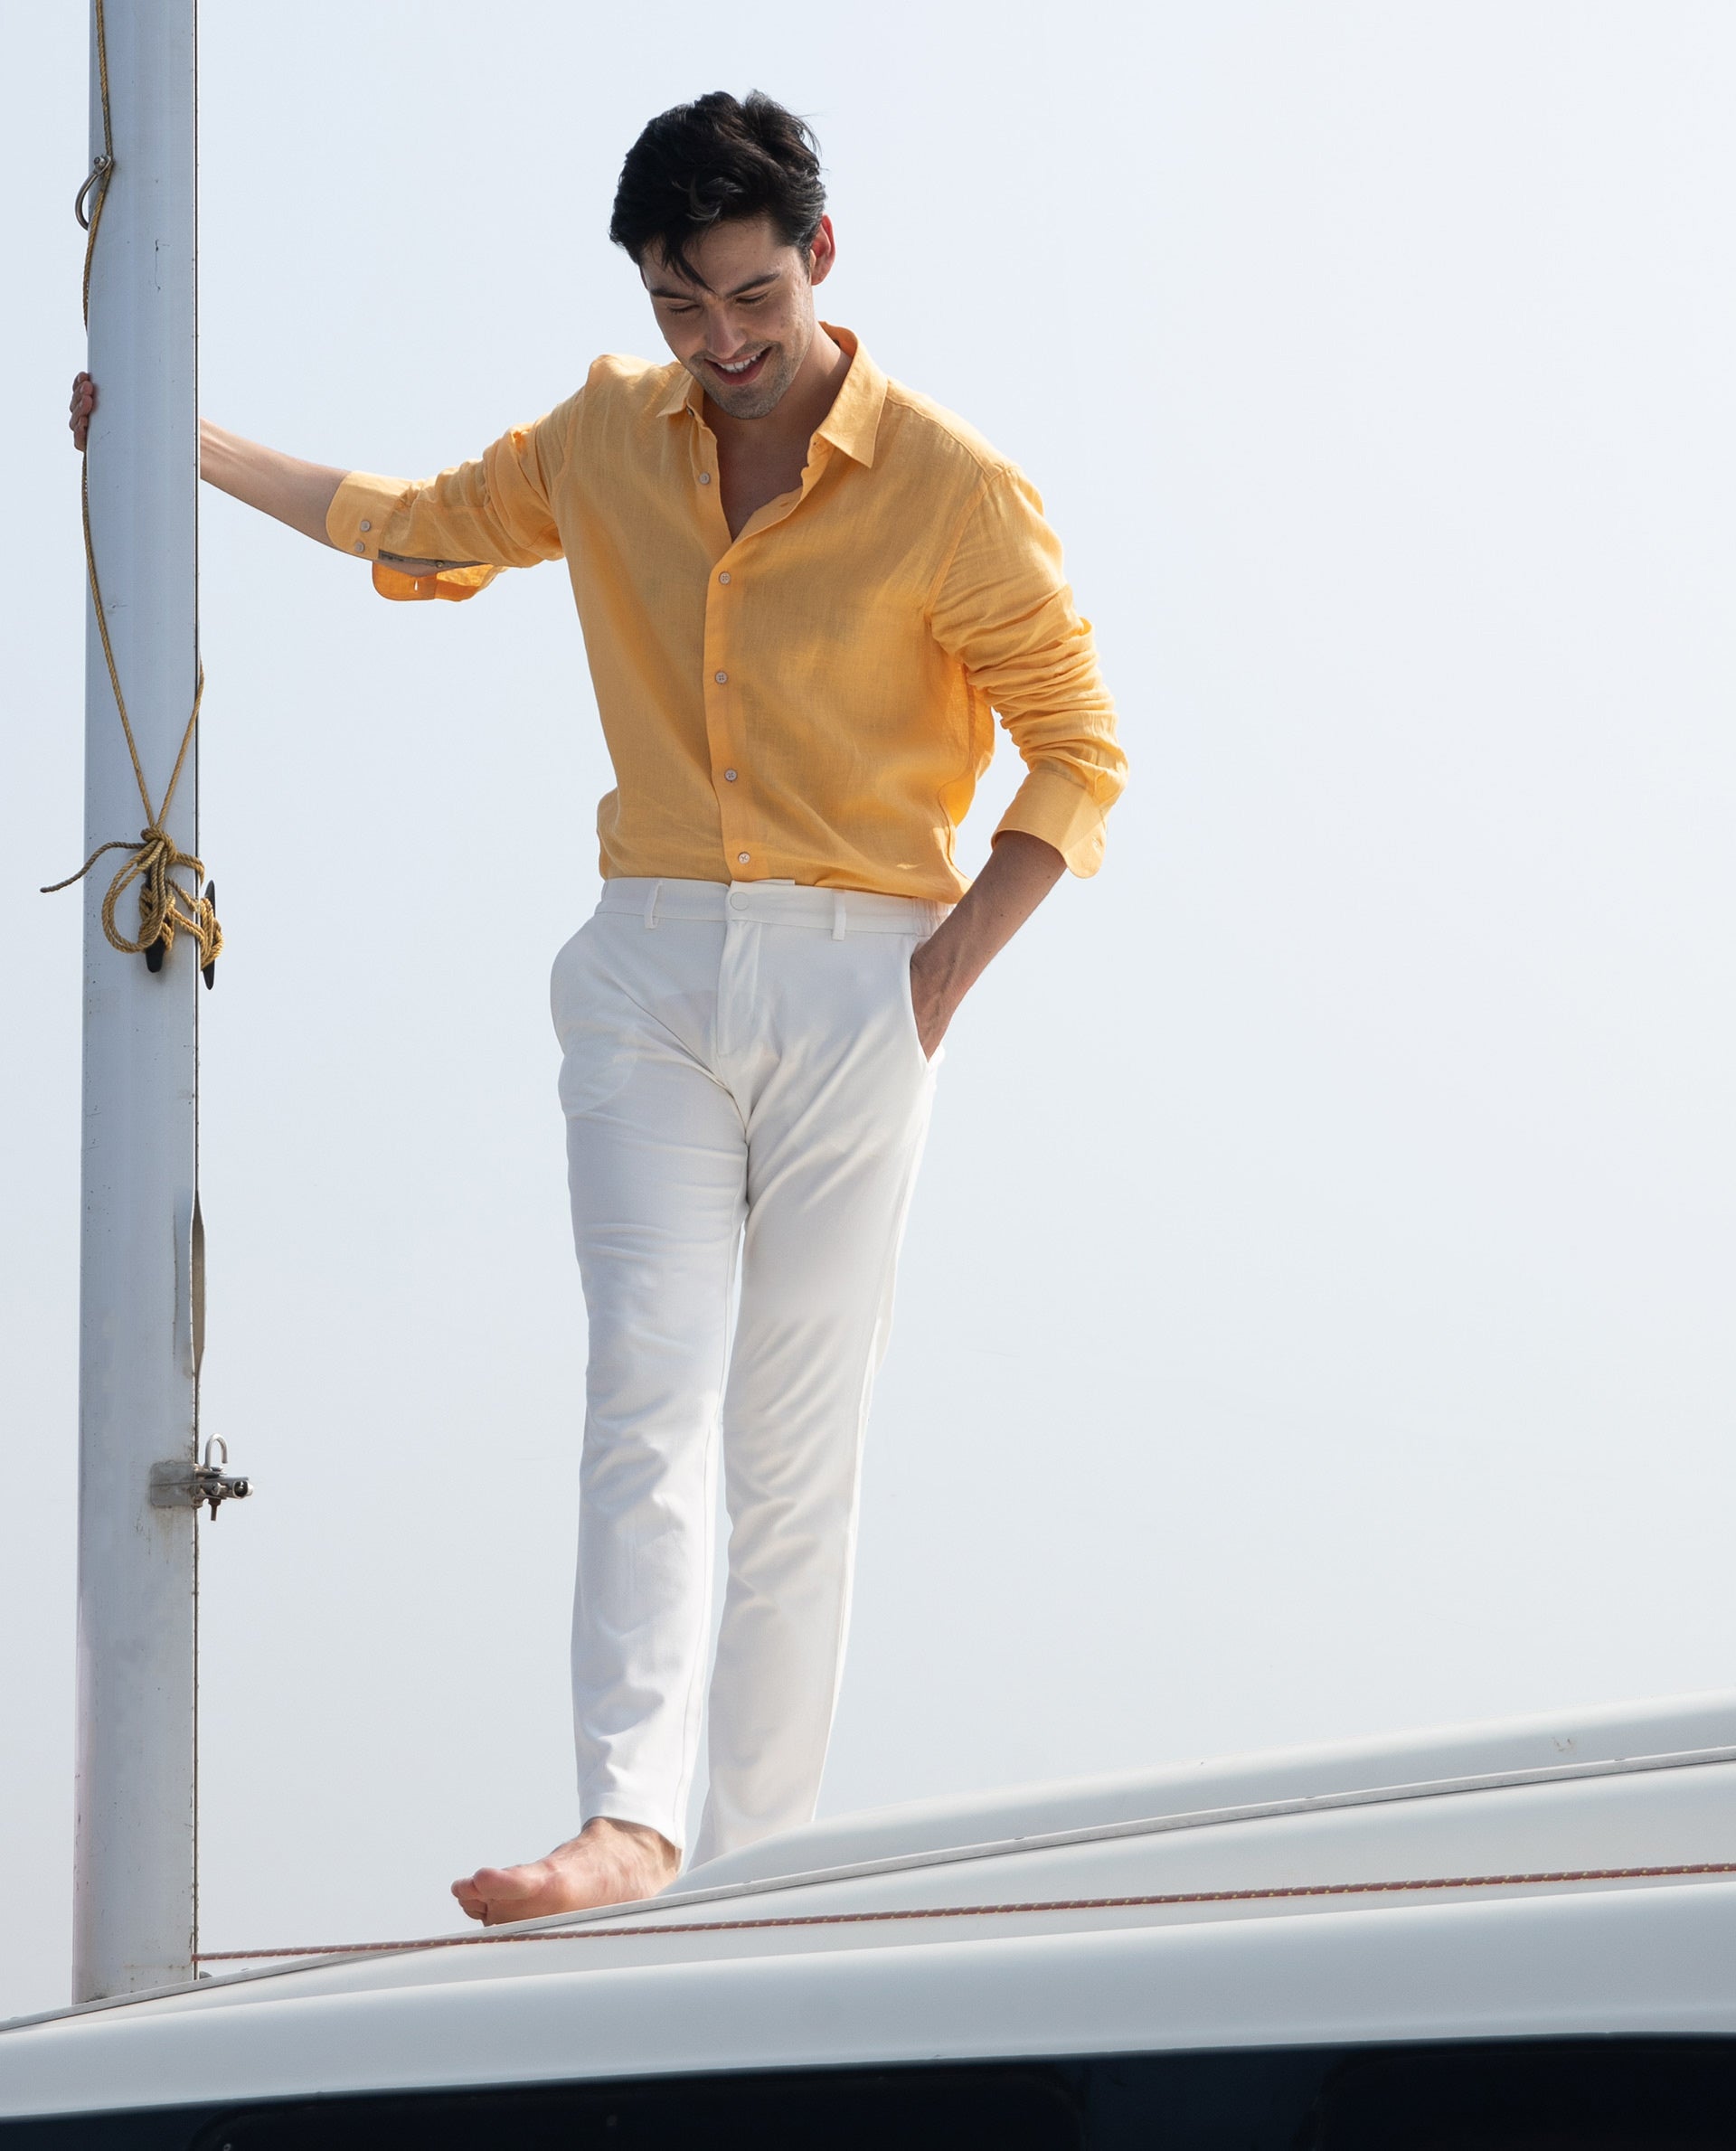 A boy wearing a yellow shirt and white pants photo  Free Human Image on  Unsplash